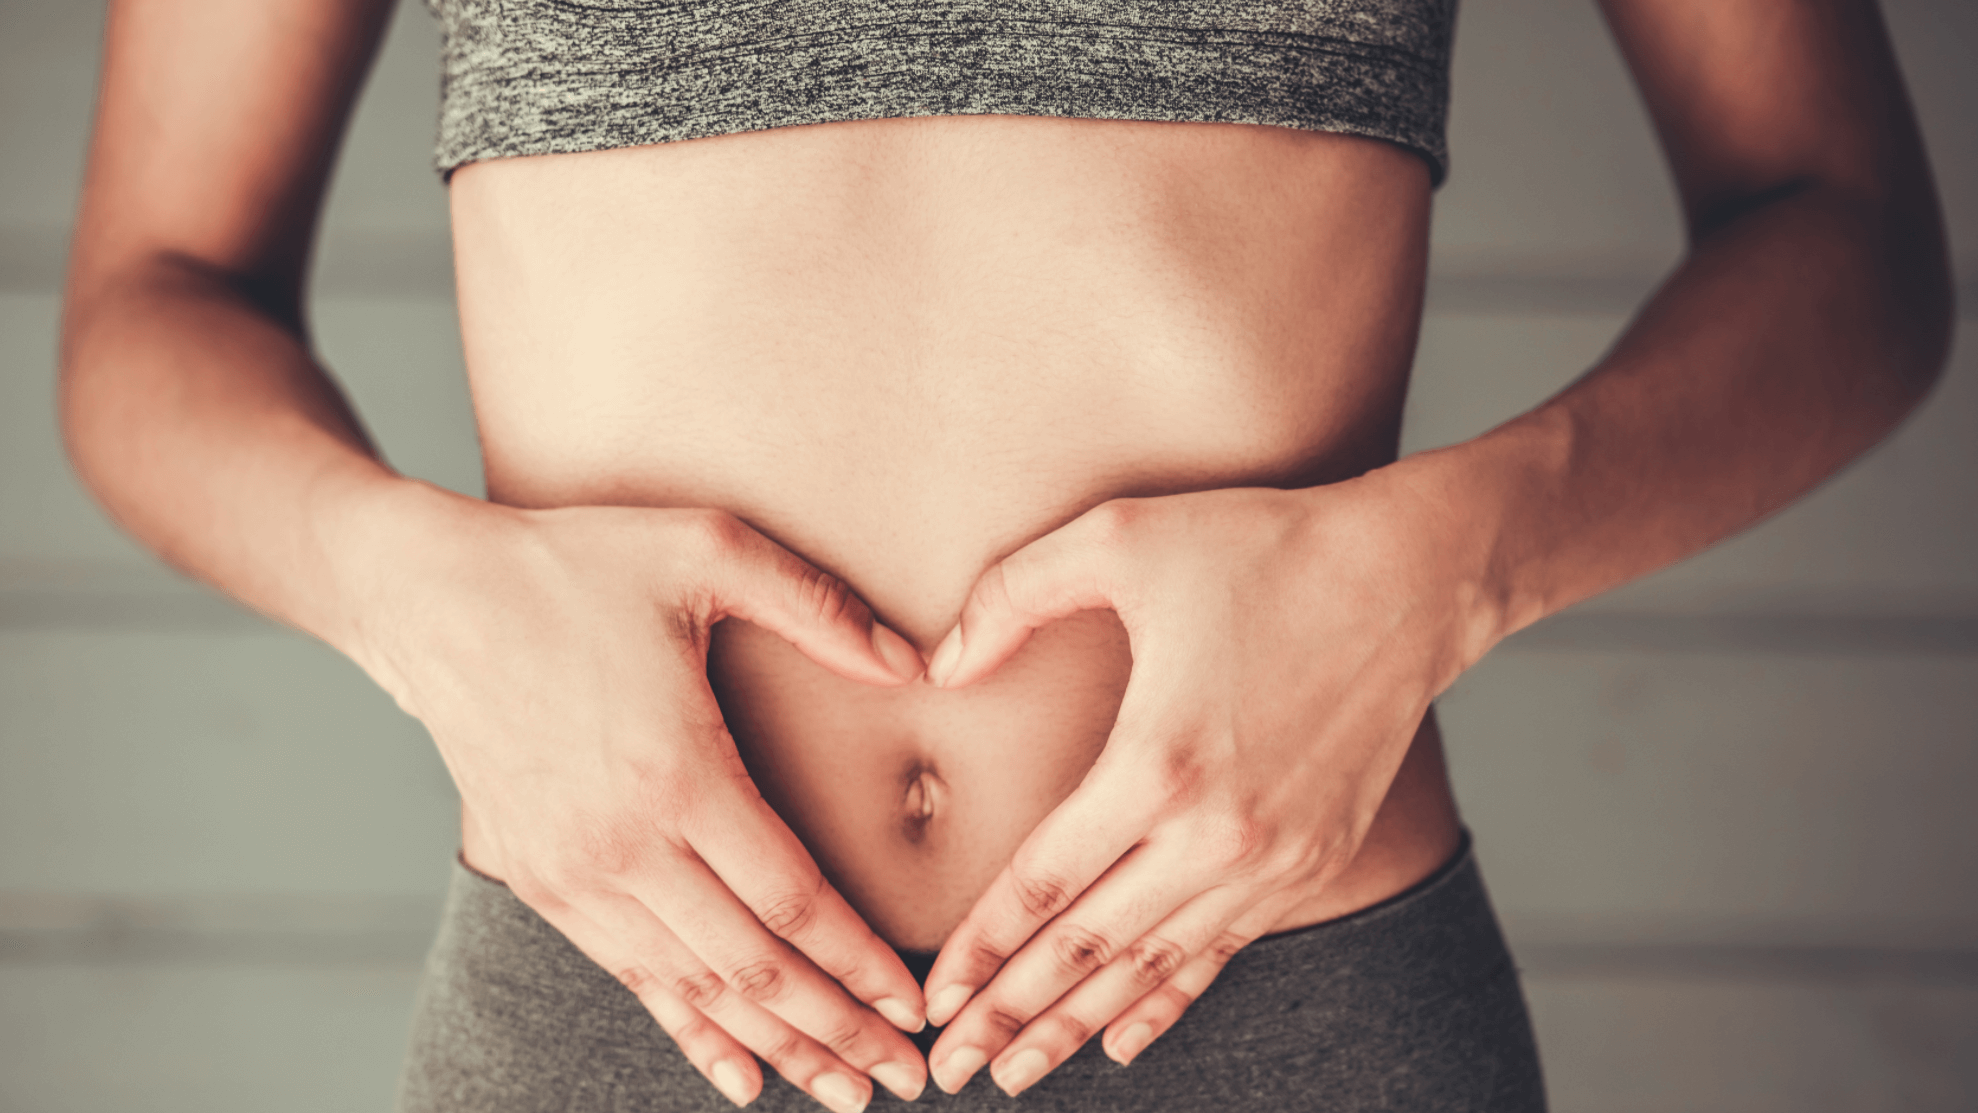 Puedes hacerte una abdominoplastia de una celebridad justo después del  embarazo?